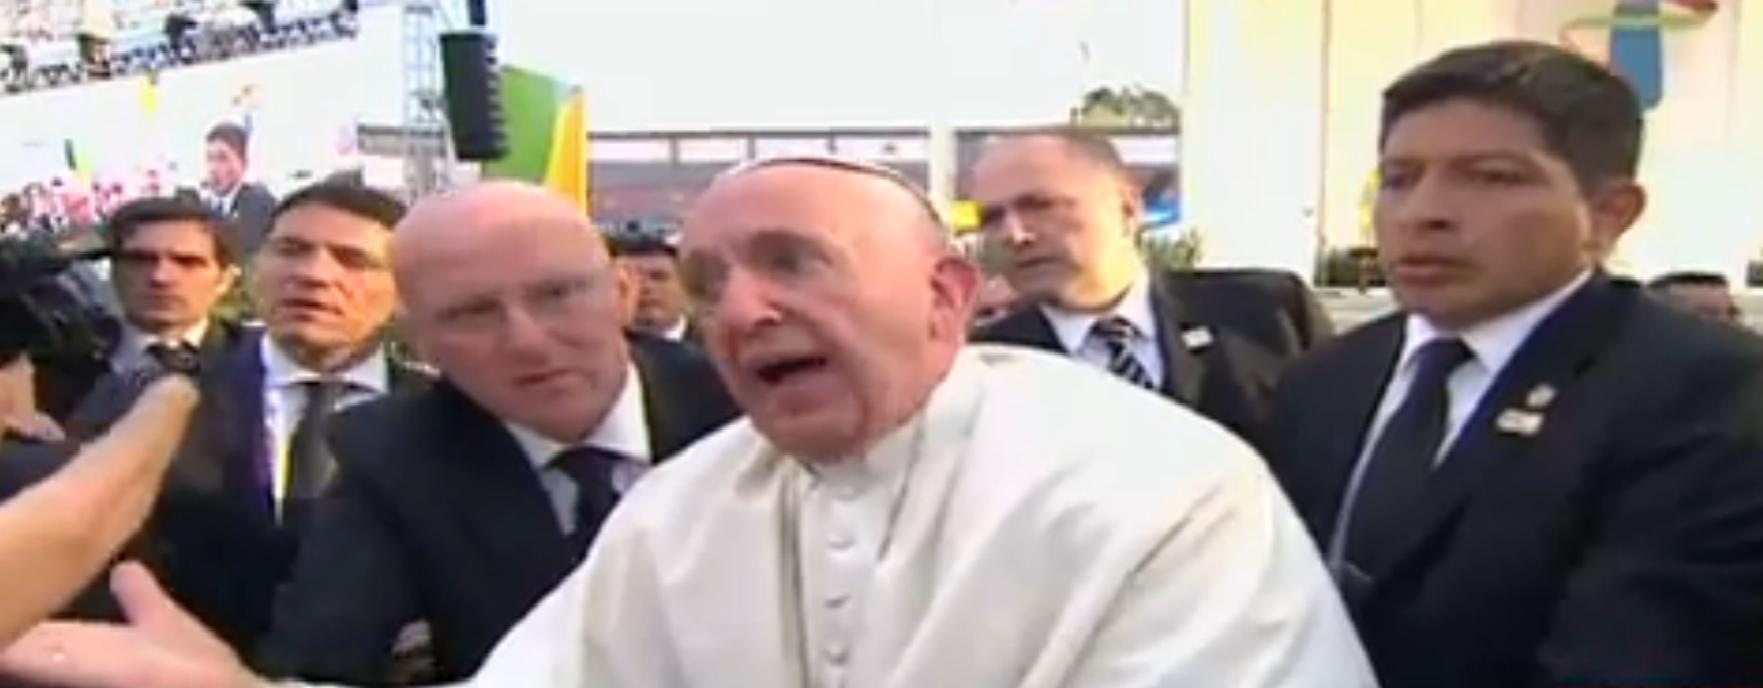 Vaticano considera “humana” reacción de papa ante jaloneo en México